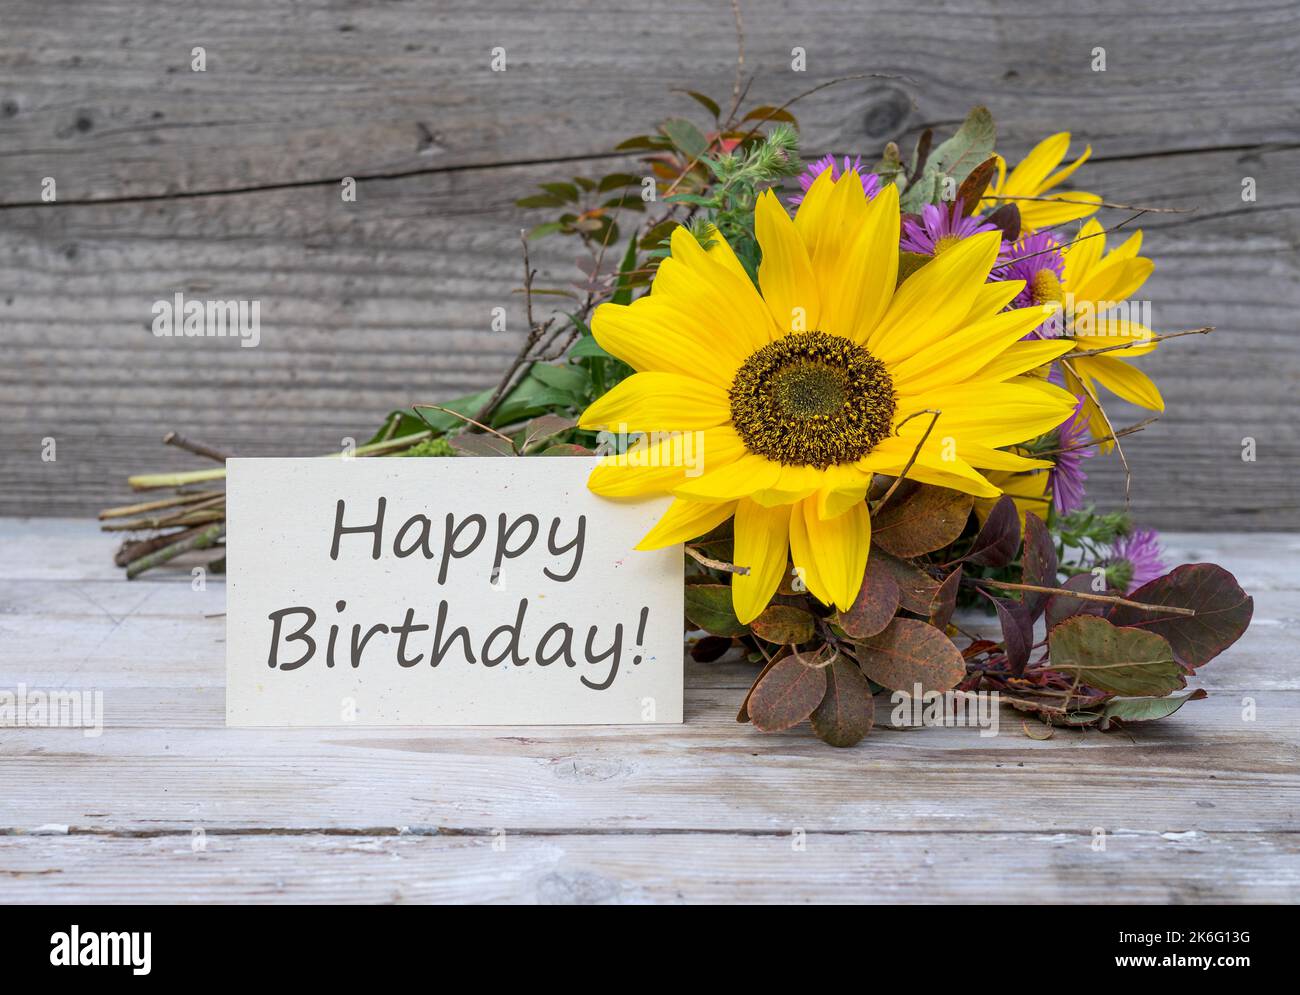 Geburtstagskarte mit dem englischen Text: Happy Birthday steht vor einem Herbststrauß mit Sonnenblumen. Stockfoto